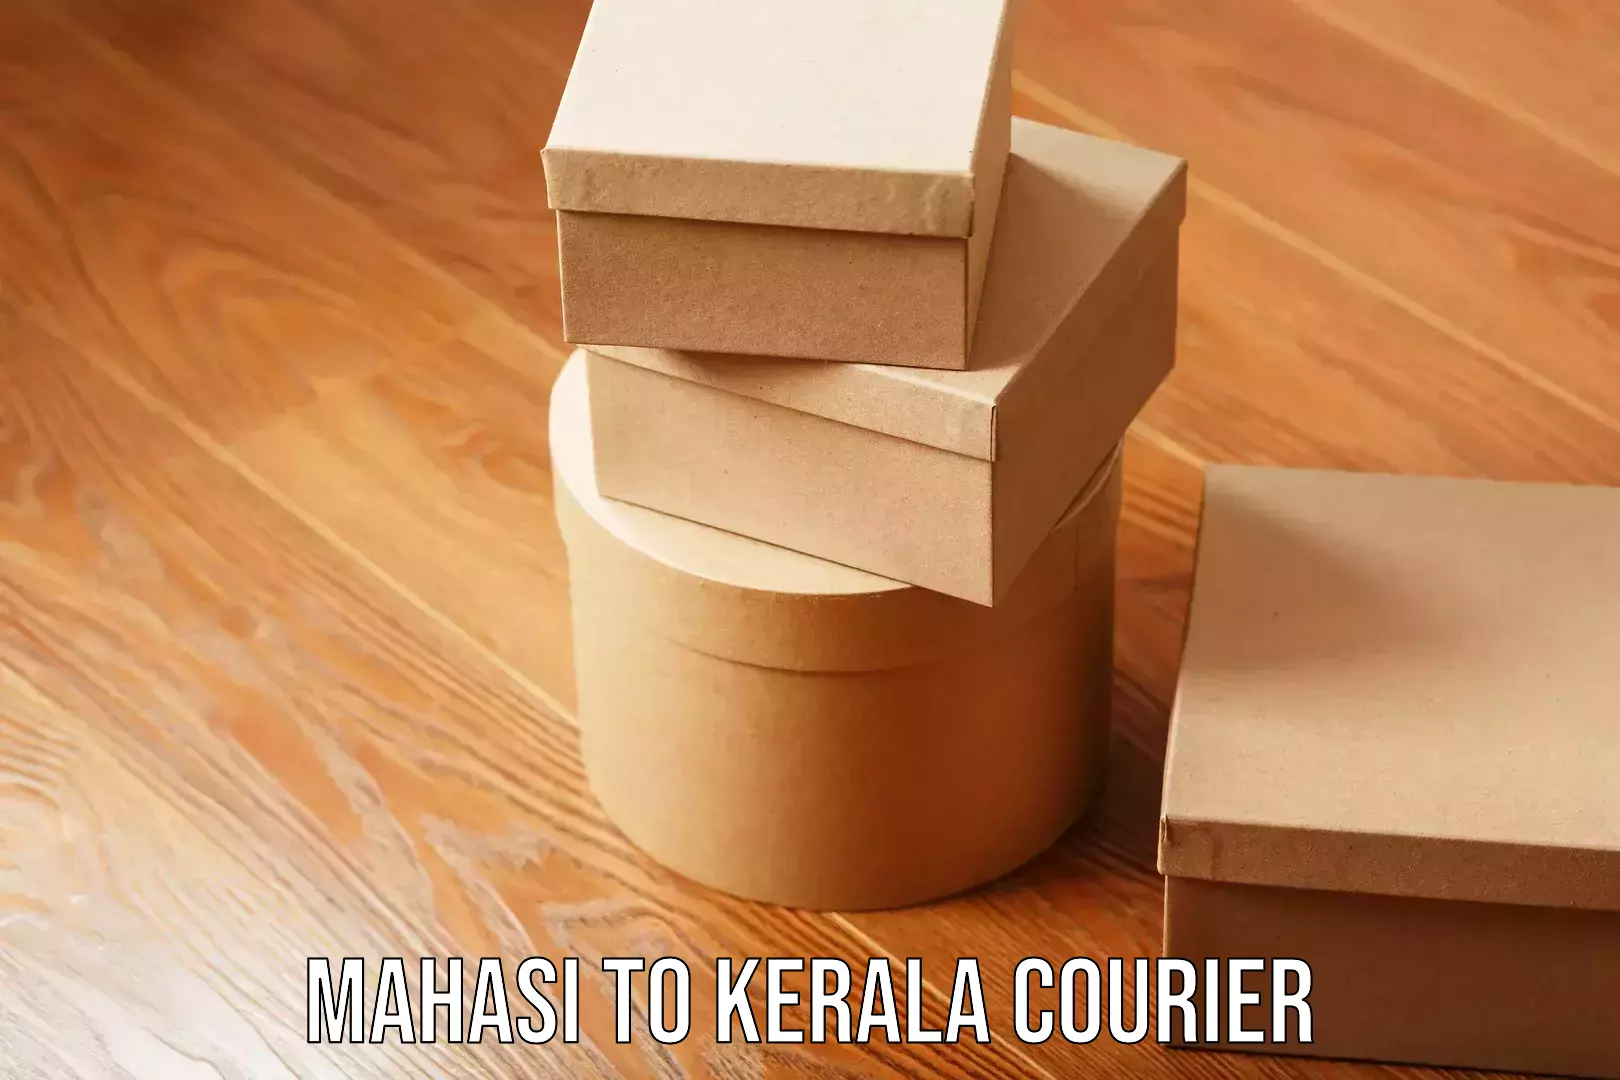 Skilled furniture transport Mahasi to Kerala